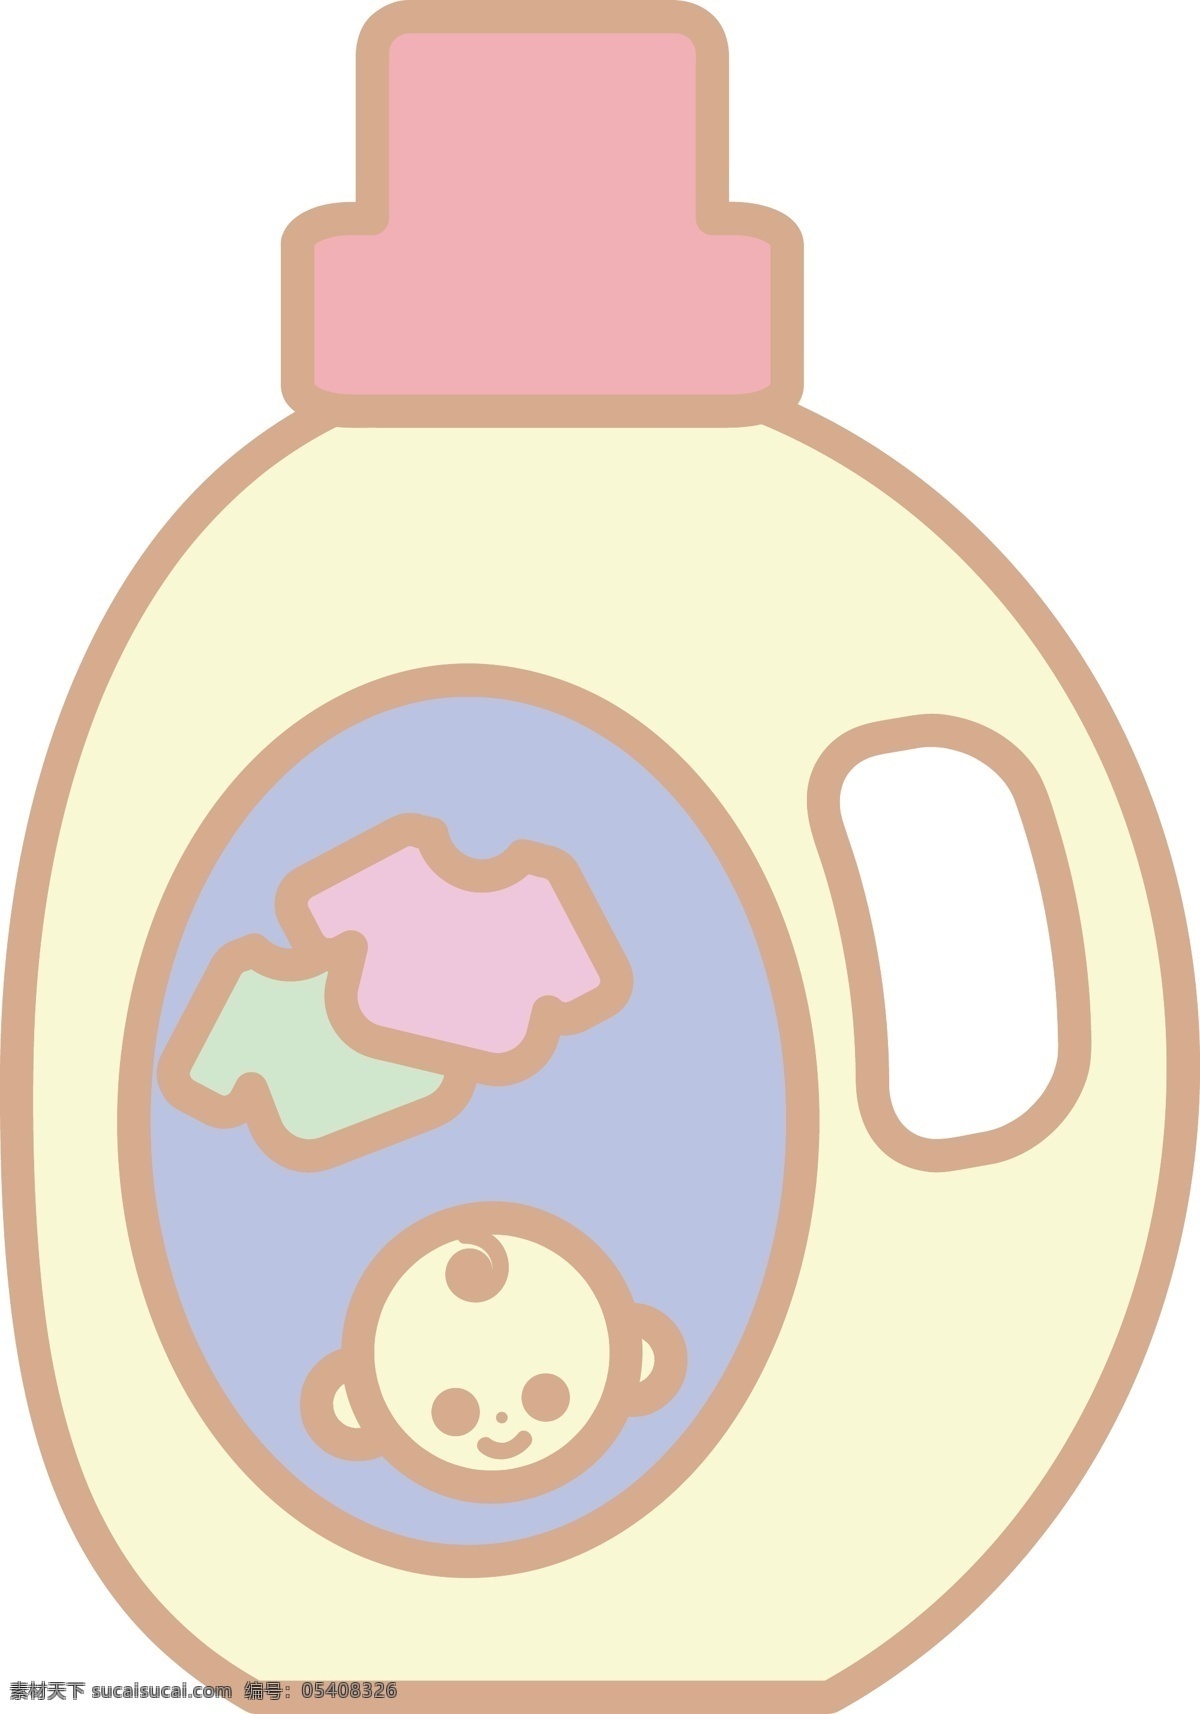 婴儿用品 洗衣液 插画 婴儿洗衣液 卡通插画 婴儿产品 婴儿物品 婴儿插画 黄色的洗衣液